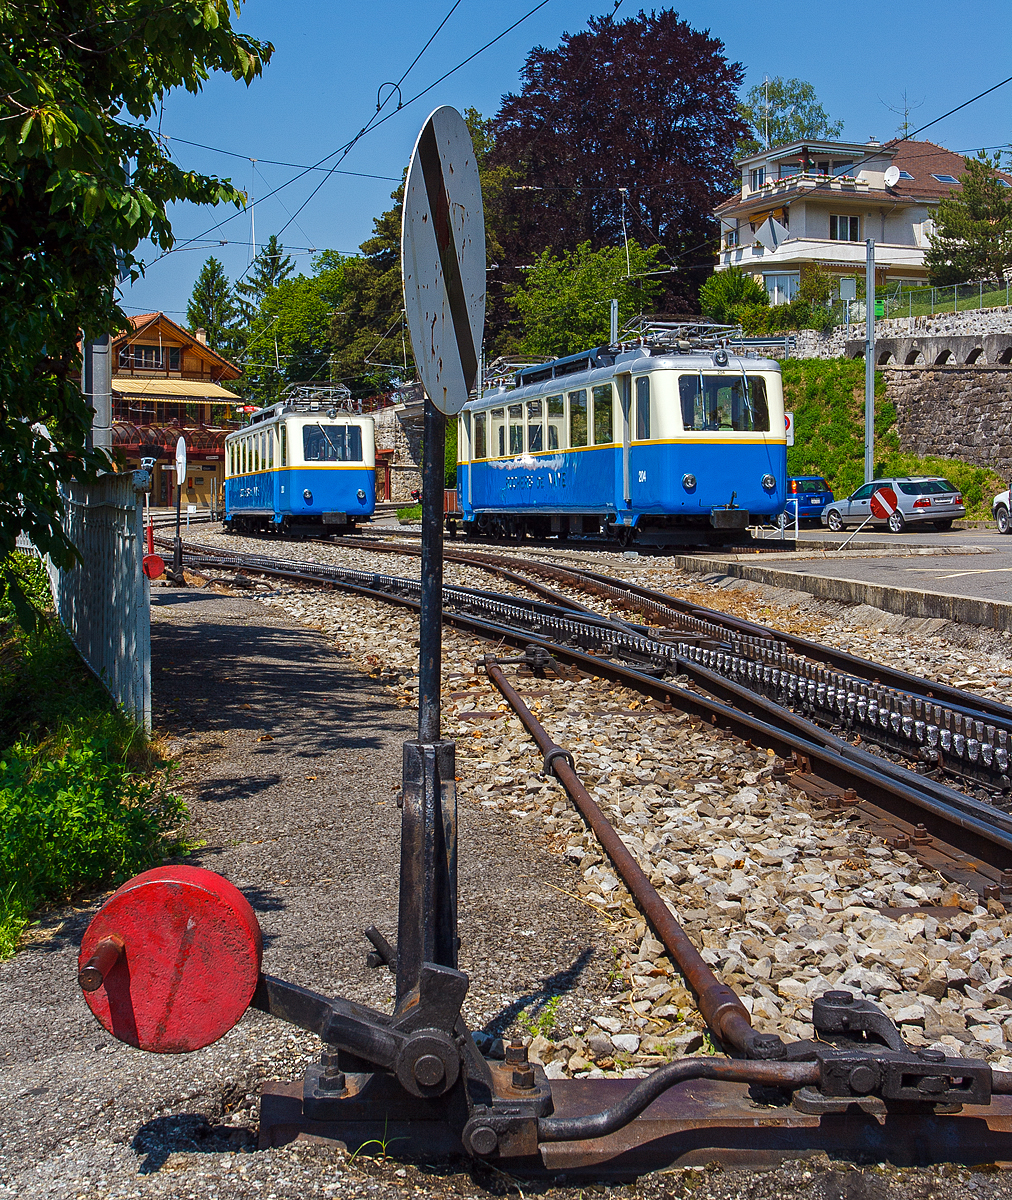 
Die beiden Elektrischen Zahnradtriebwagen Bhe 2/4 203 und  Bhe 2/4 204 (beide ex BChe 2/4) der Transports Montreux-Vevey-Riviera (MVR), ex Montreux–Territet–Glion–Rochers-de-Naye-Bahn (MTGN), am 26.05.2012 abgestellt im Bahnhof Glion. 

Die Triebwagen wurde 1938 von der Schweizerische Lokomotiv- und Maschinenfabrik (SLM) in Winterthur gebaut, der elektrische Teil ist von BBC.

Technische Daten:
Spurweite:  800 mm
Zahnstangensystem:  Abt
Achsfolge:  2'z 2'z
Länge über Puffer:  15.050 mm
Eigengewicht:  15.5 t
Höchstgeschwindigkeit: 18 km/h
Leistung: 150 kW
Fahrleitungsspannung:  850 V =
